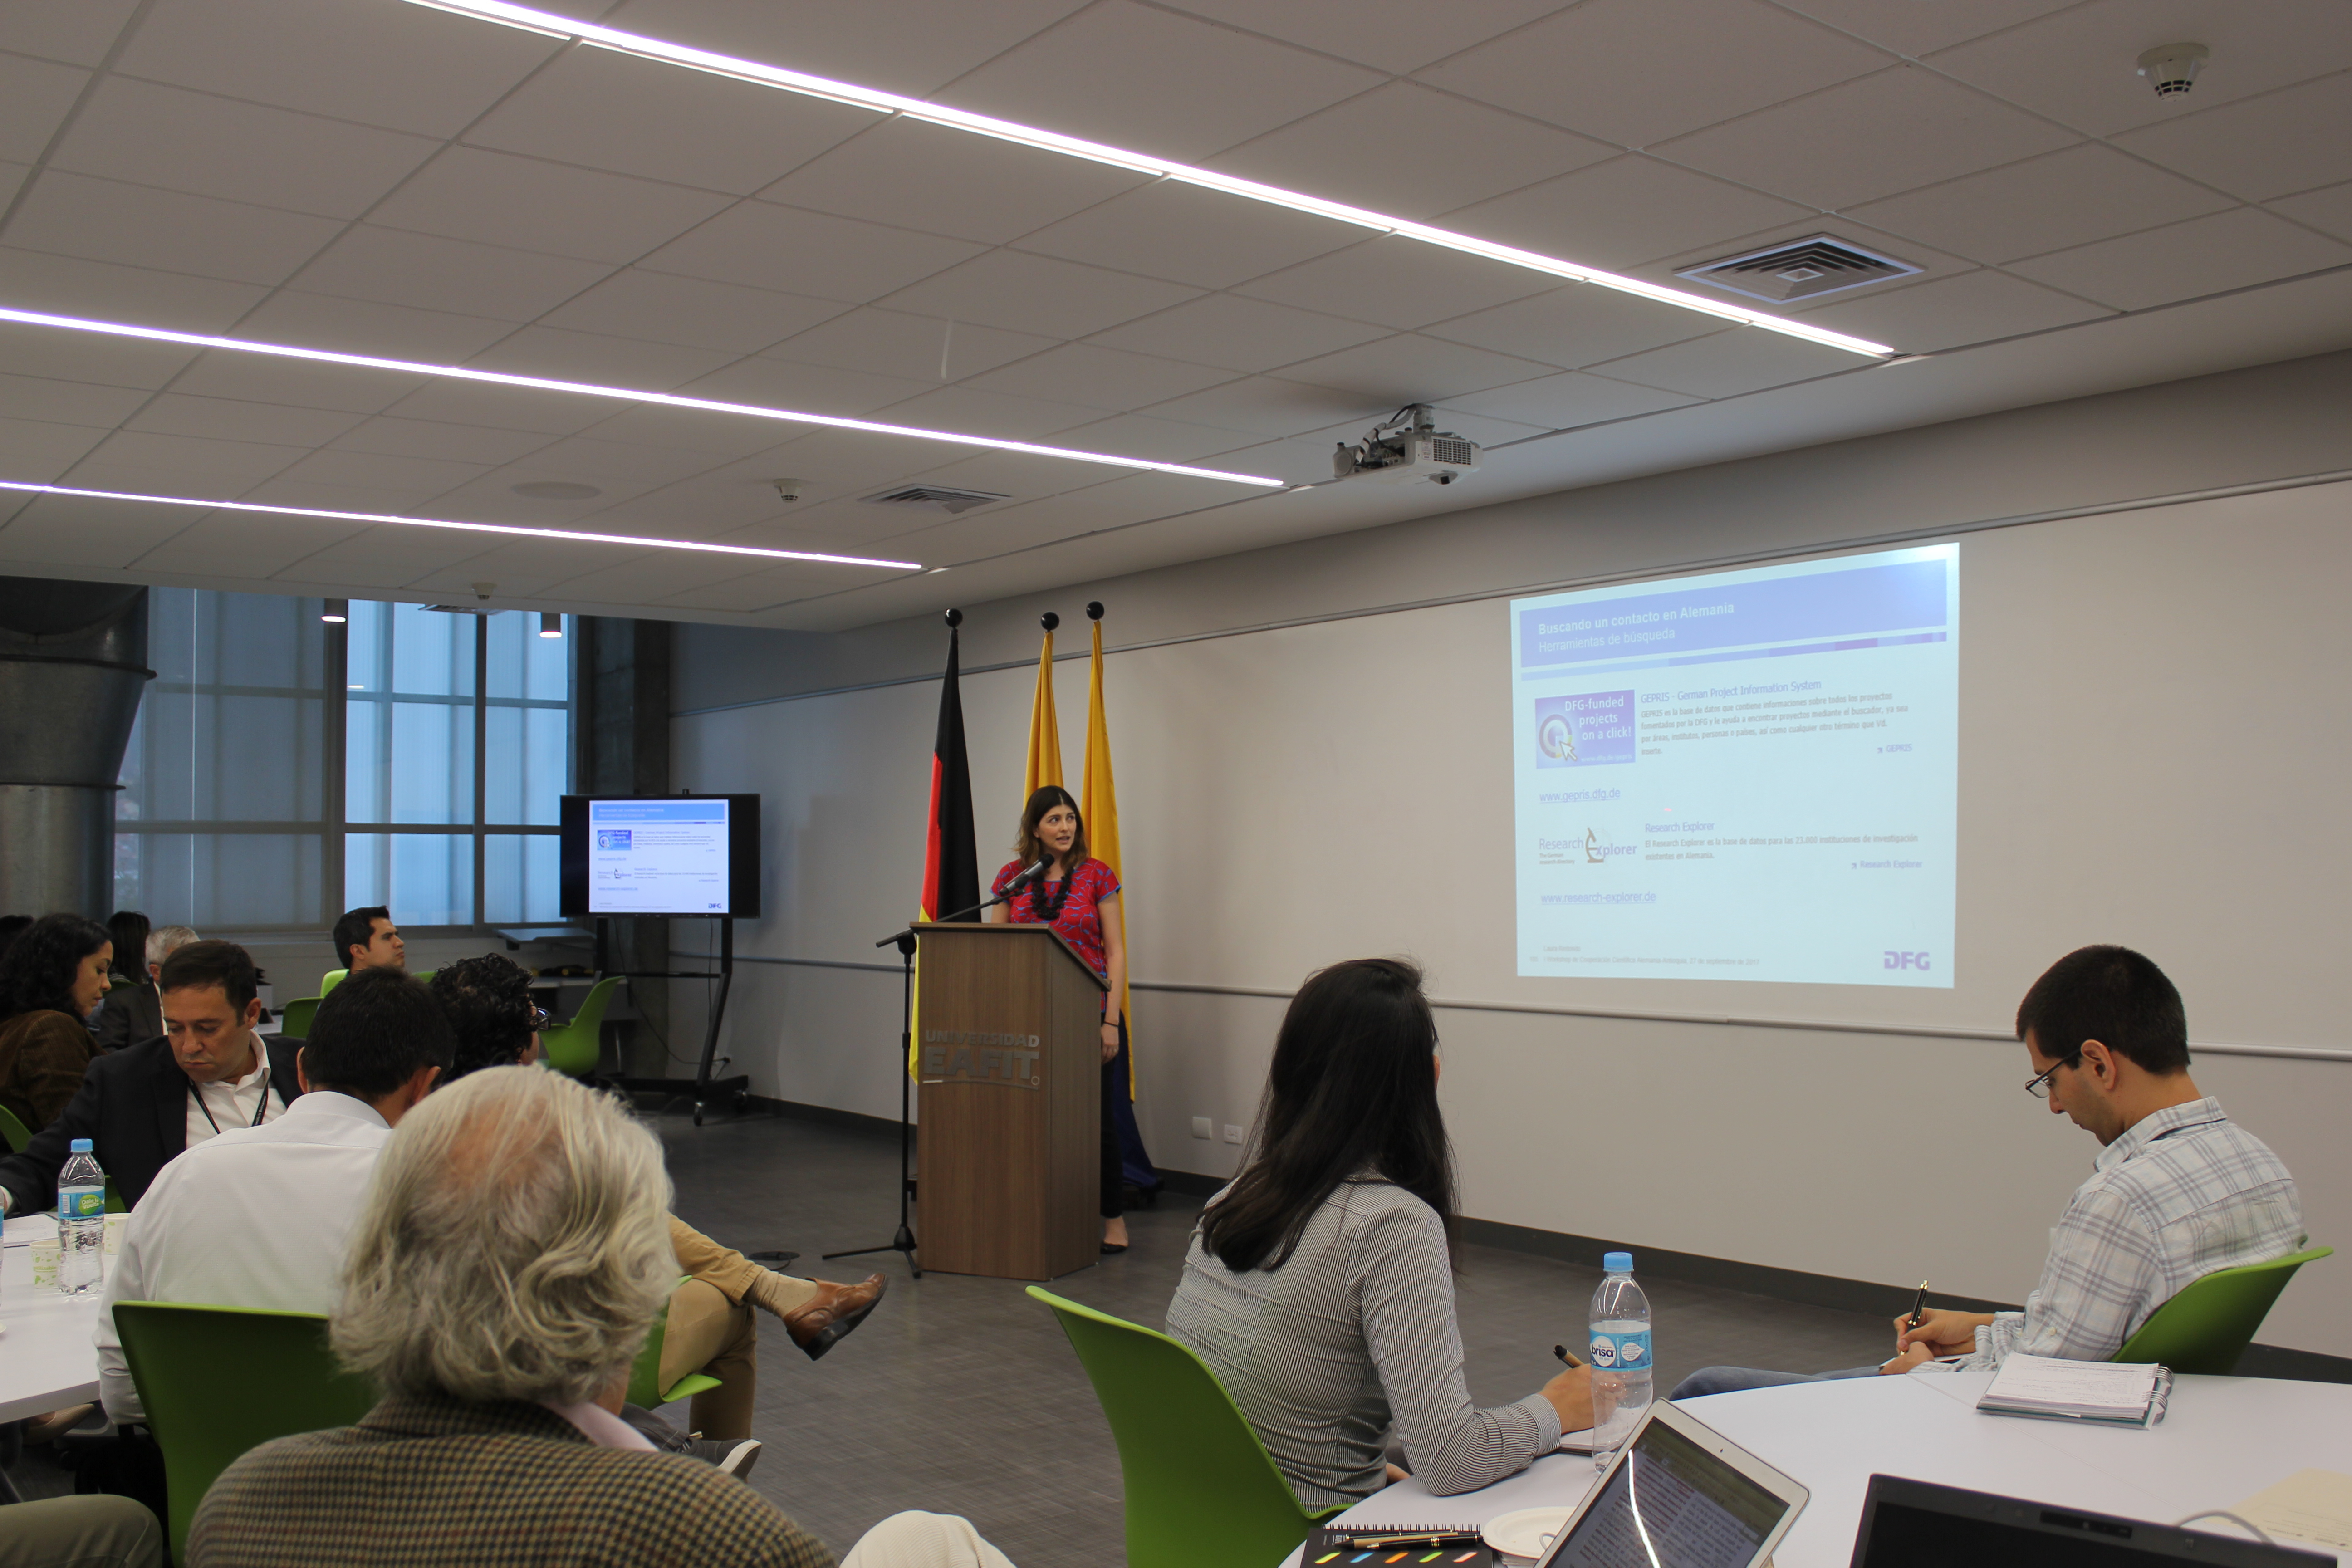 Laura Redondo presentó la Oficina de la DFG en América Latina y sus actividades en la región